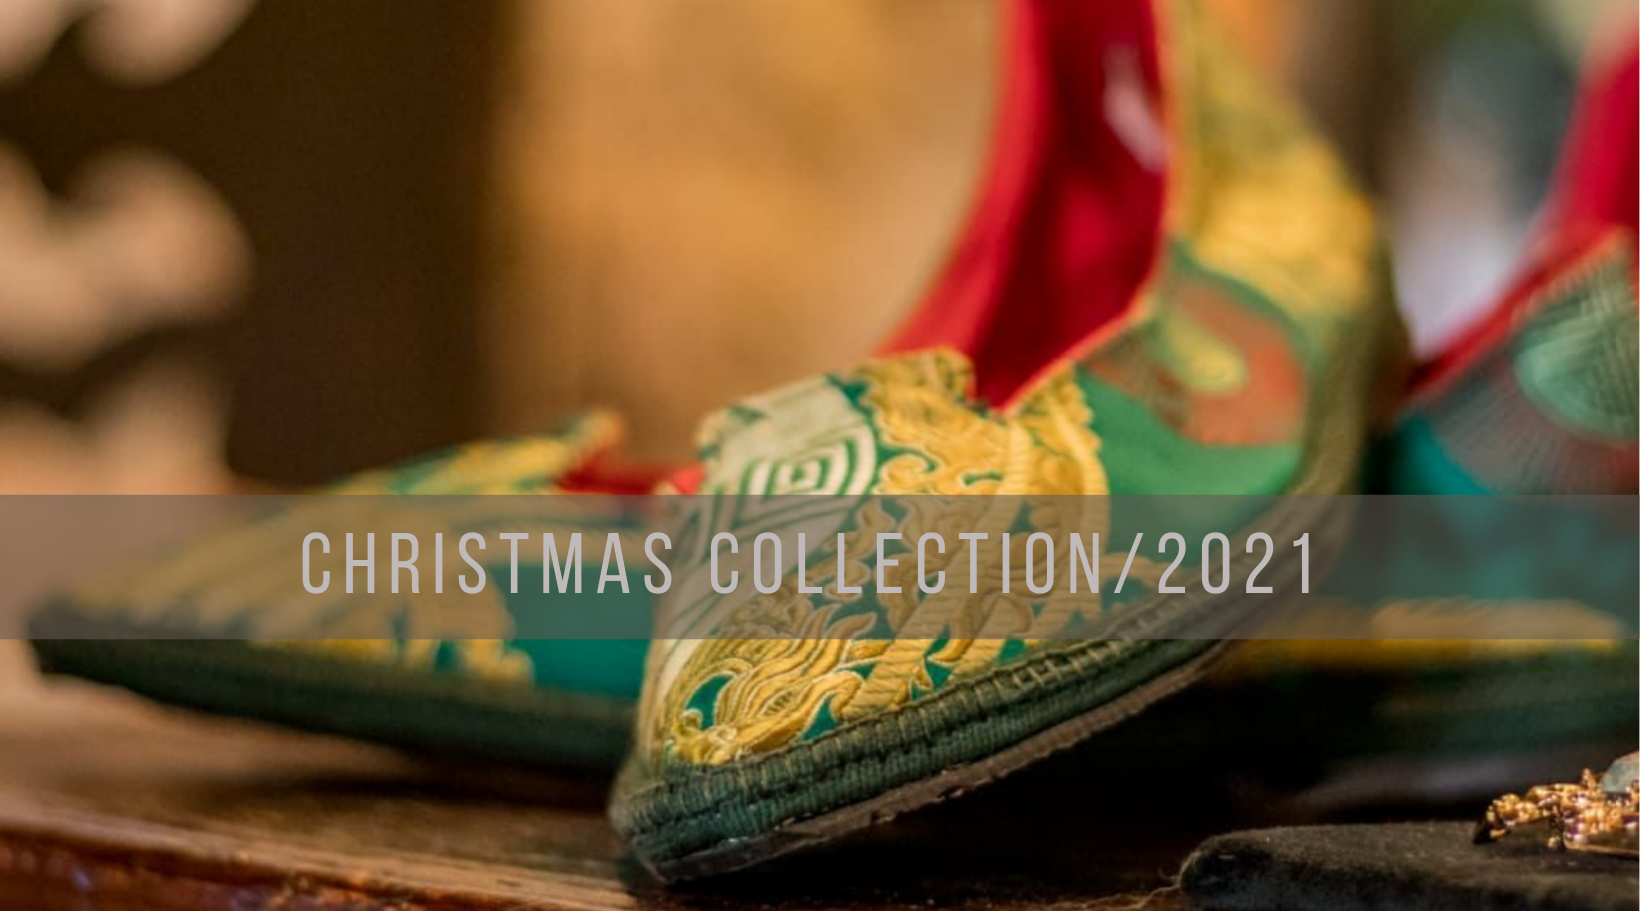 Christmas collection/2021